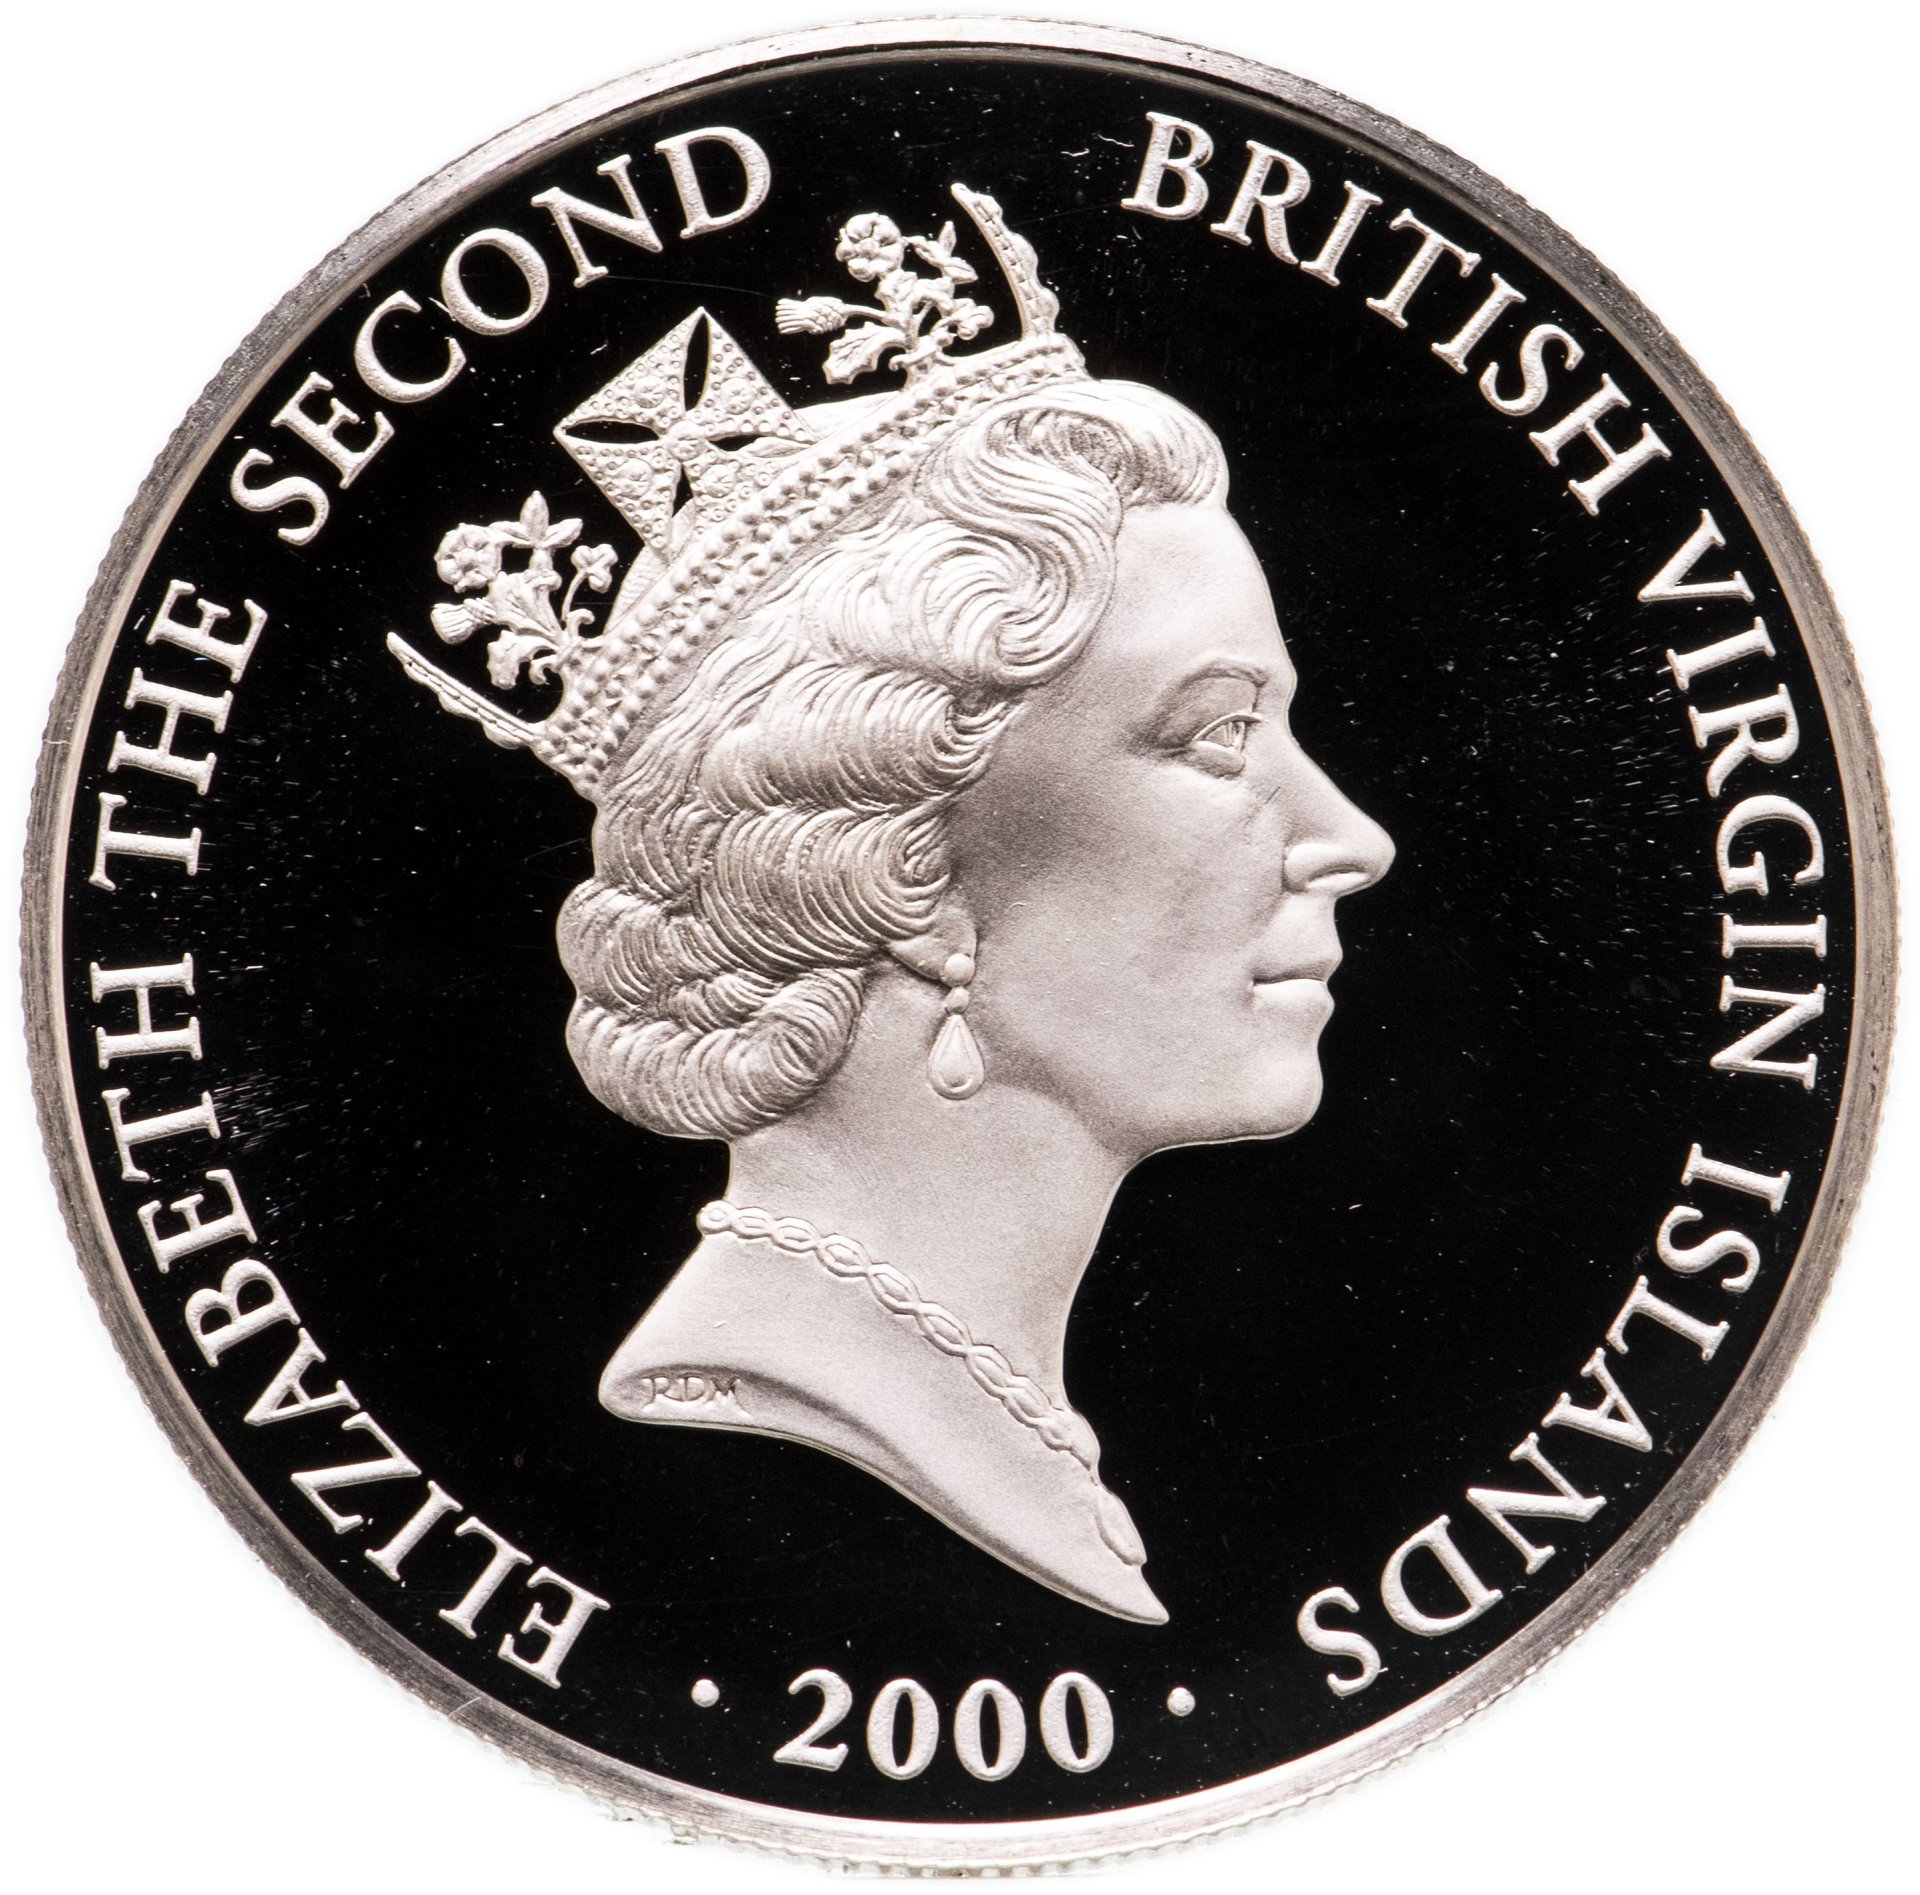 119 долларов в рублях. Монеты британских Виргинских островов. Монета британские Виргинские острова 1 доллар 2000 года. Монета британские Виргинские острова 1 доллар 2003 года аскот.